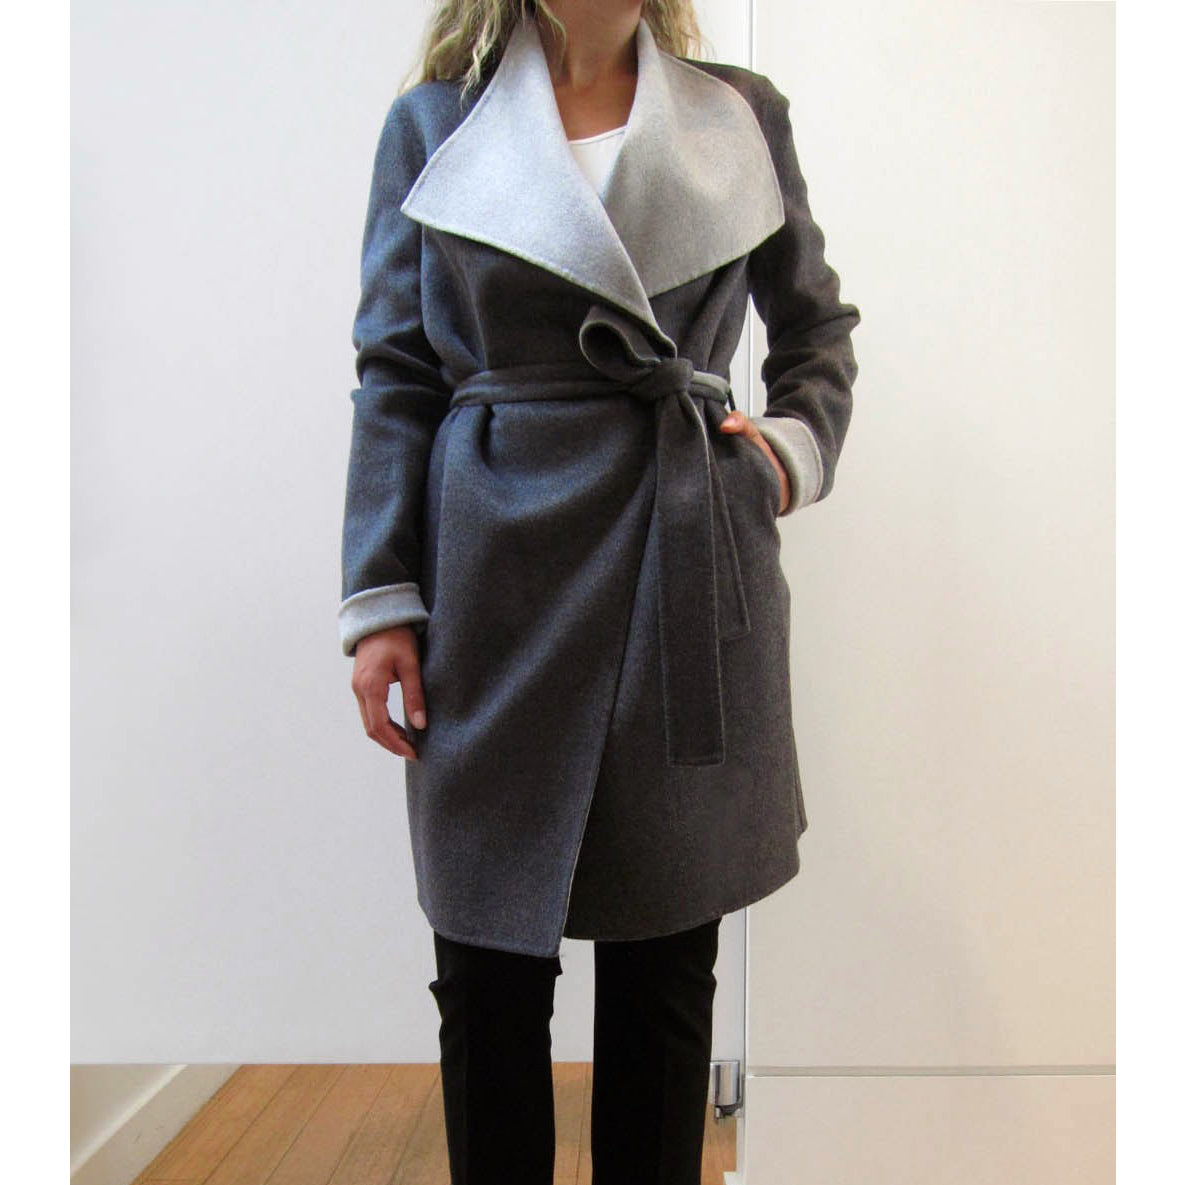 Joseph Grey Doubleface "Lisa Long" Coat, size 34 (fits a size 2)